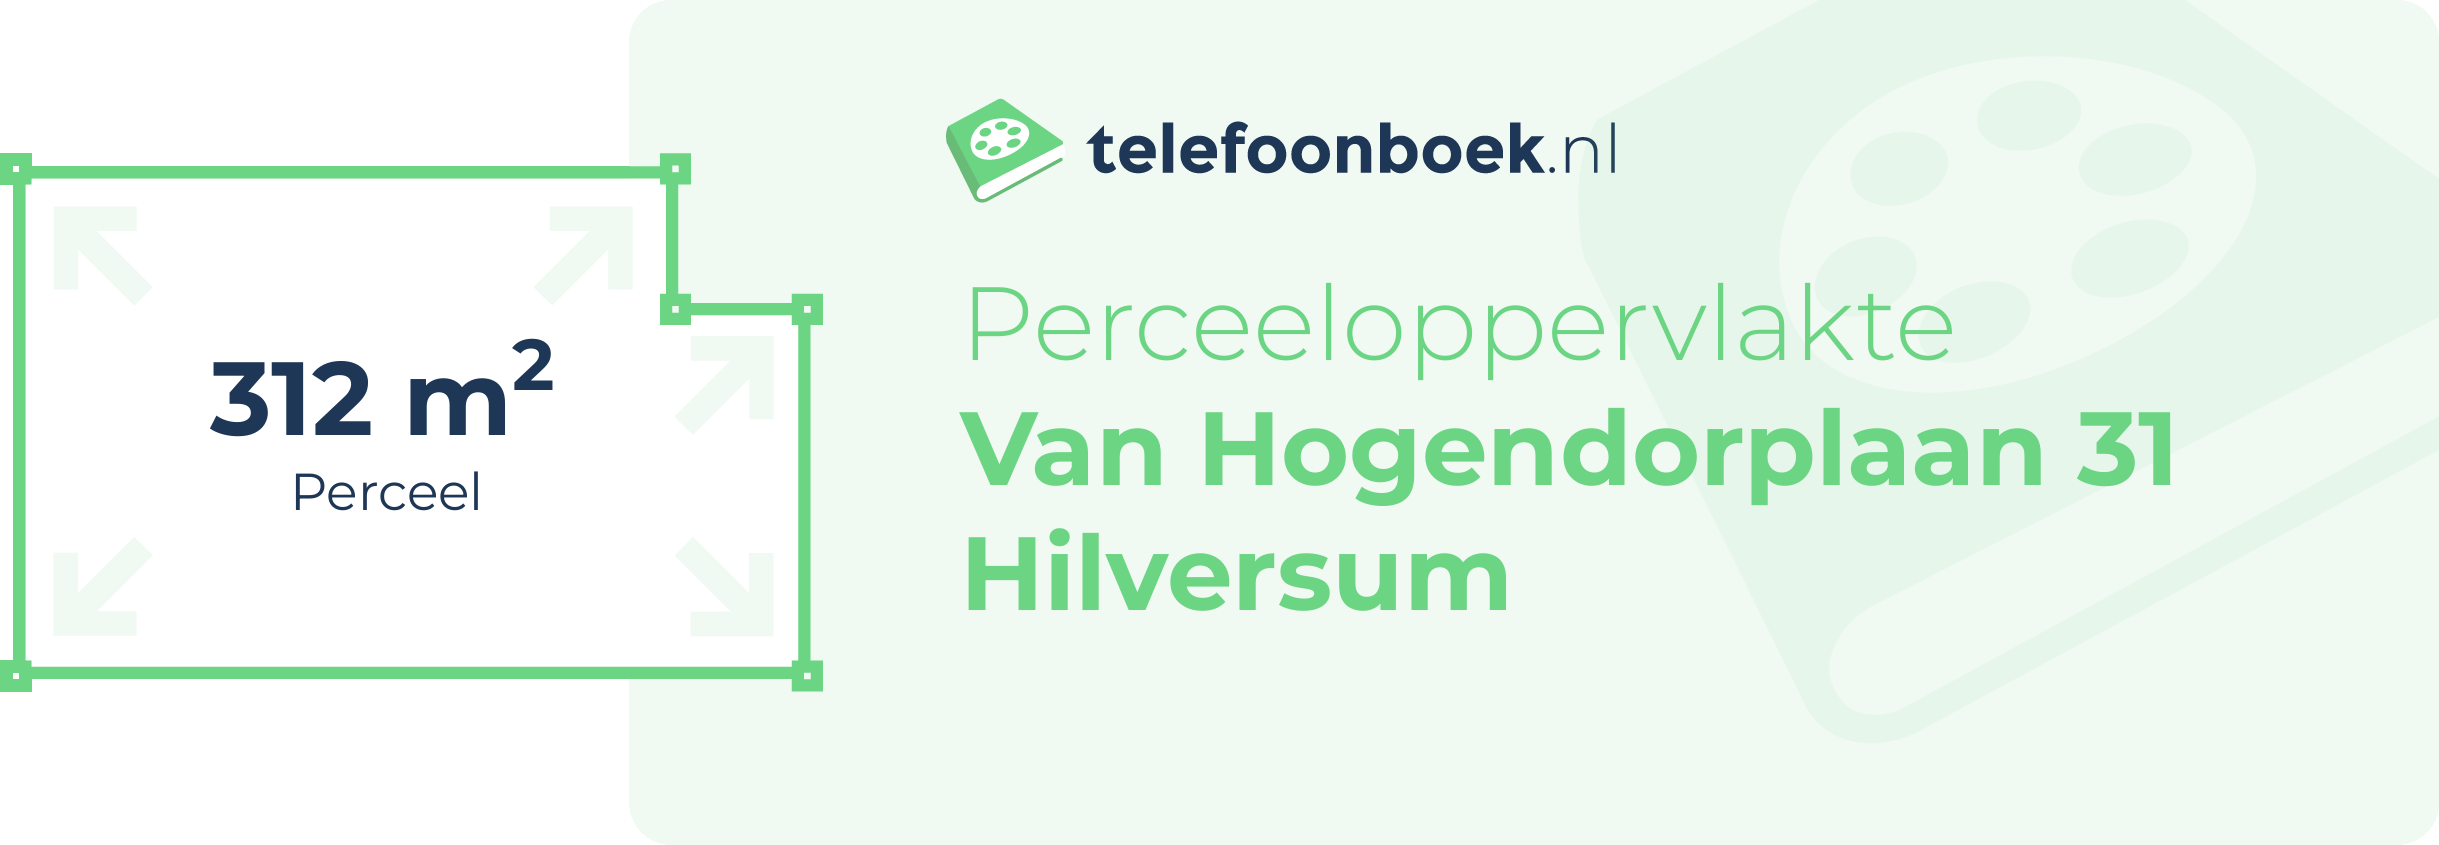 Perceeloppervlakte Van Hogendorplaan 31 Hilversum